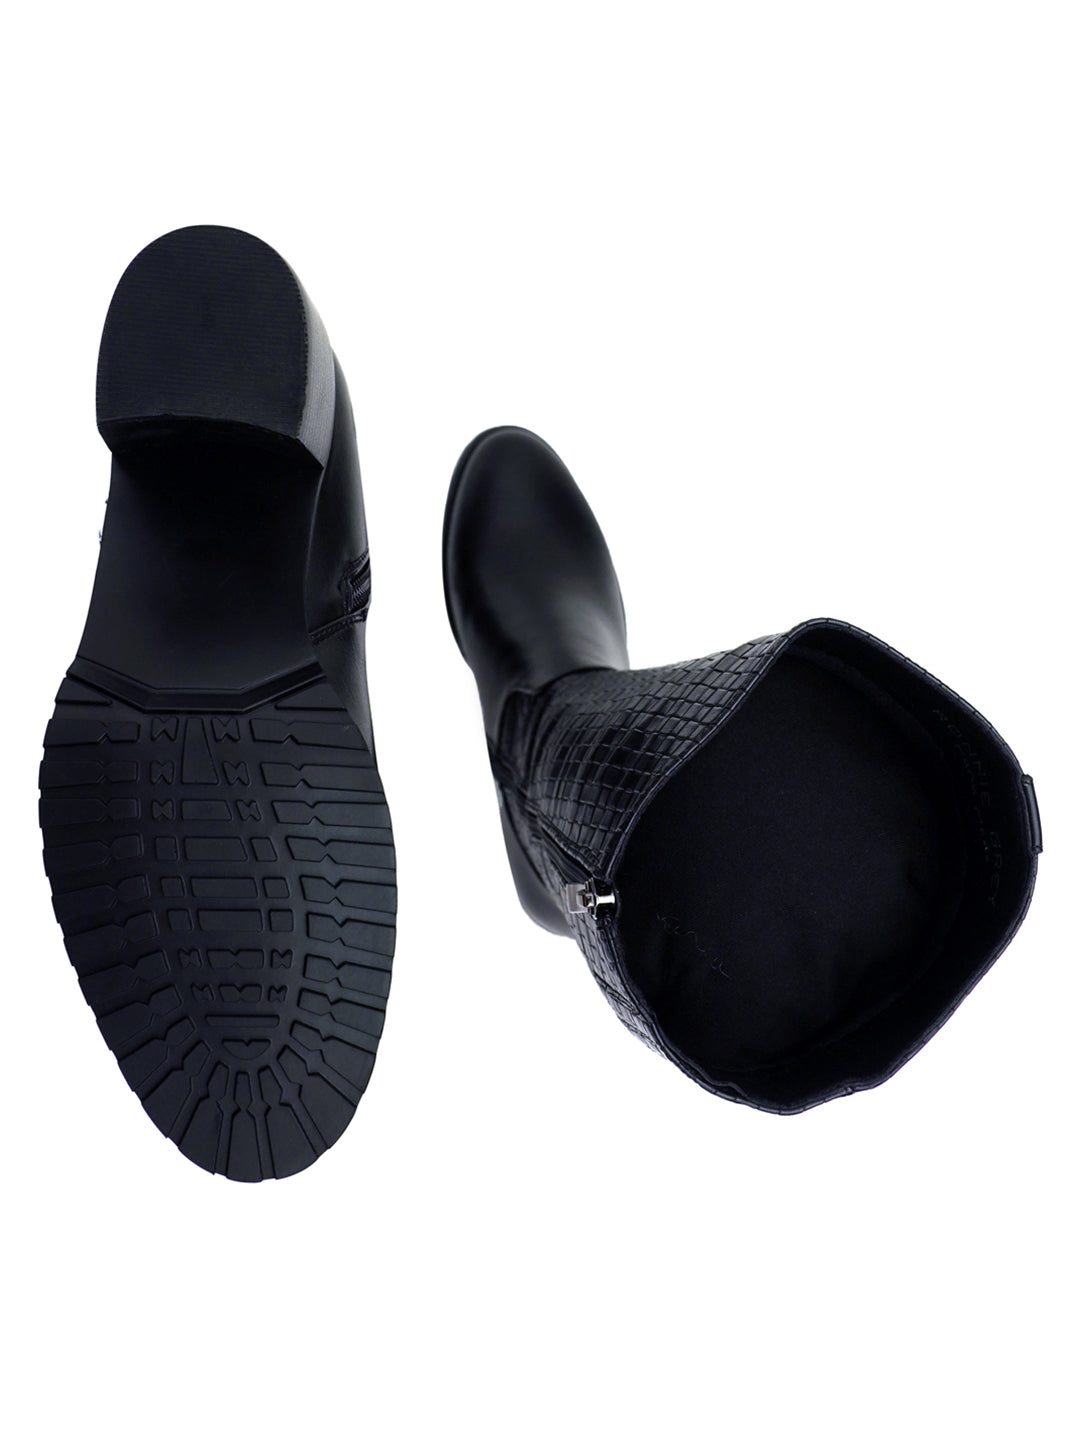 Footwear, Women Footwear, Black Boots